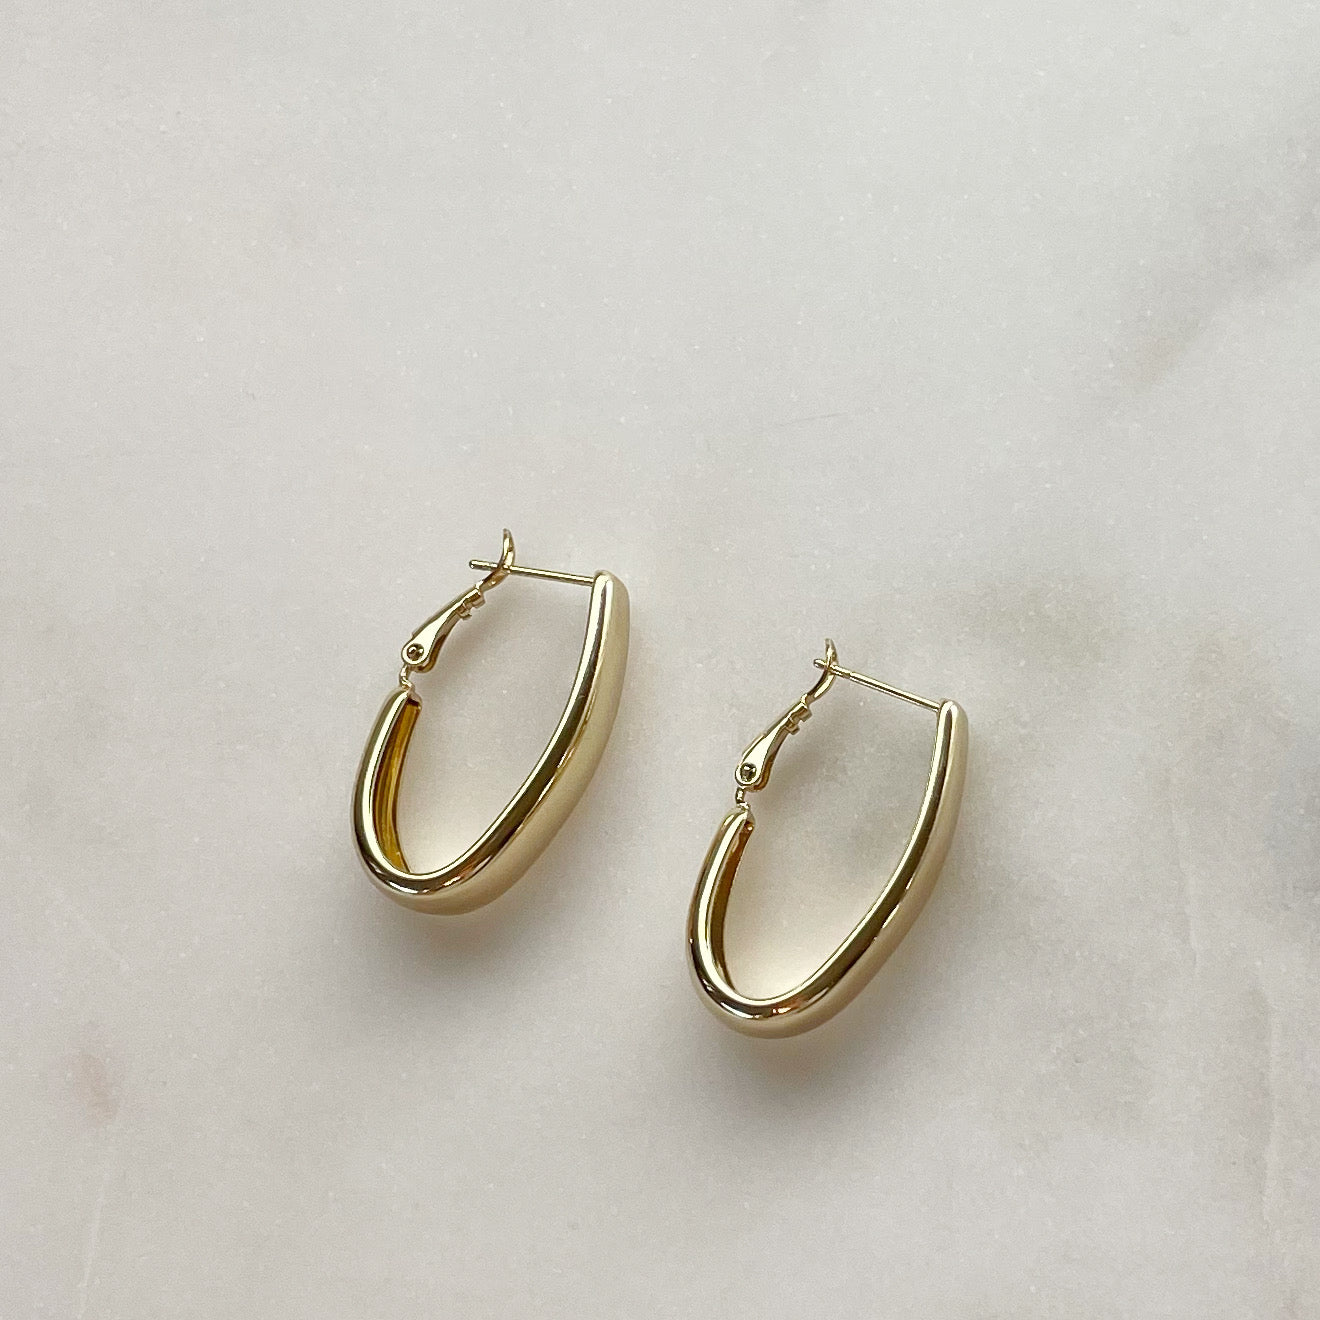 Flawless Hoop Earrings - Smooth Gold Filled Hoops